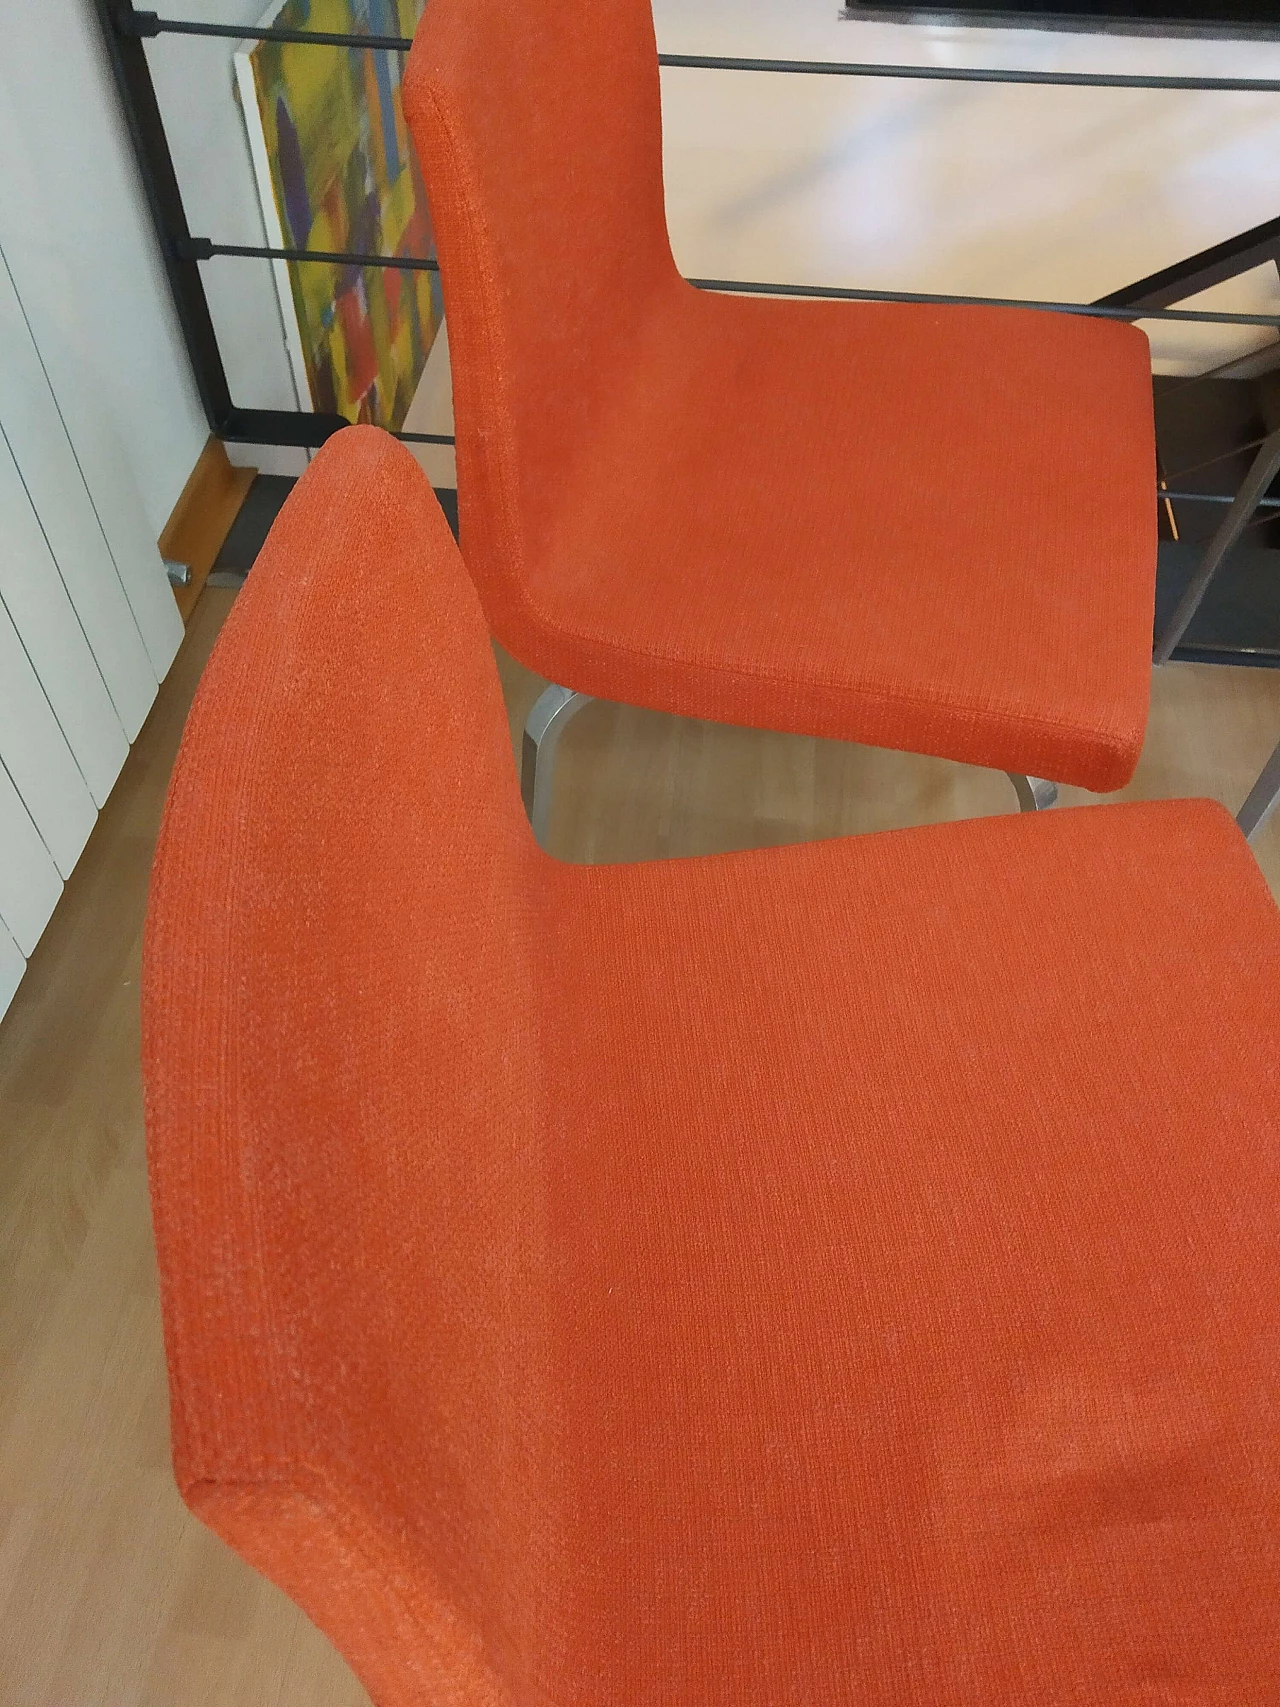 4 Hella Chairs by Mauro Lipparini for MisuraEmme 1477163